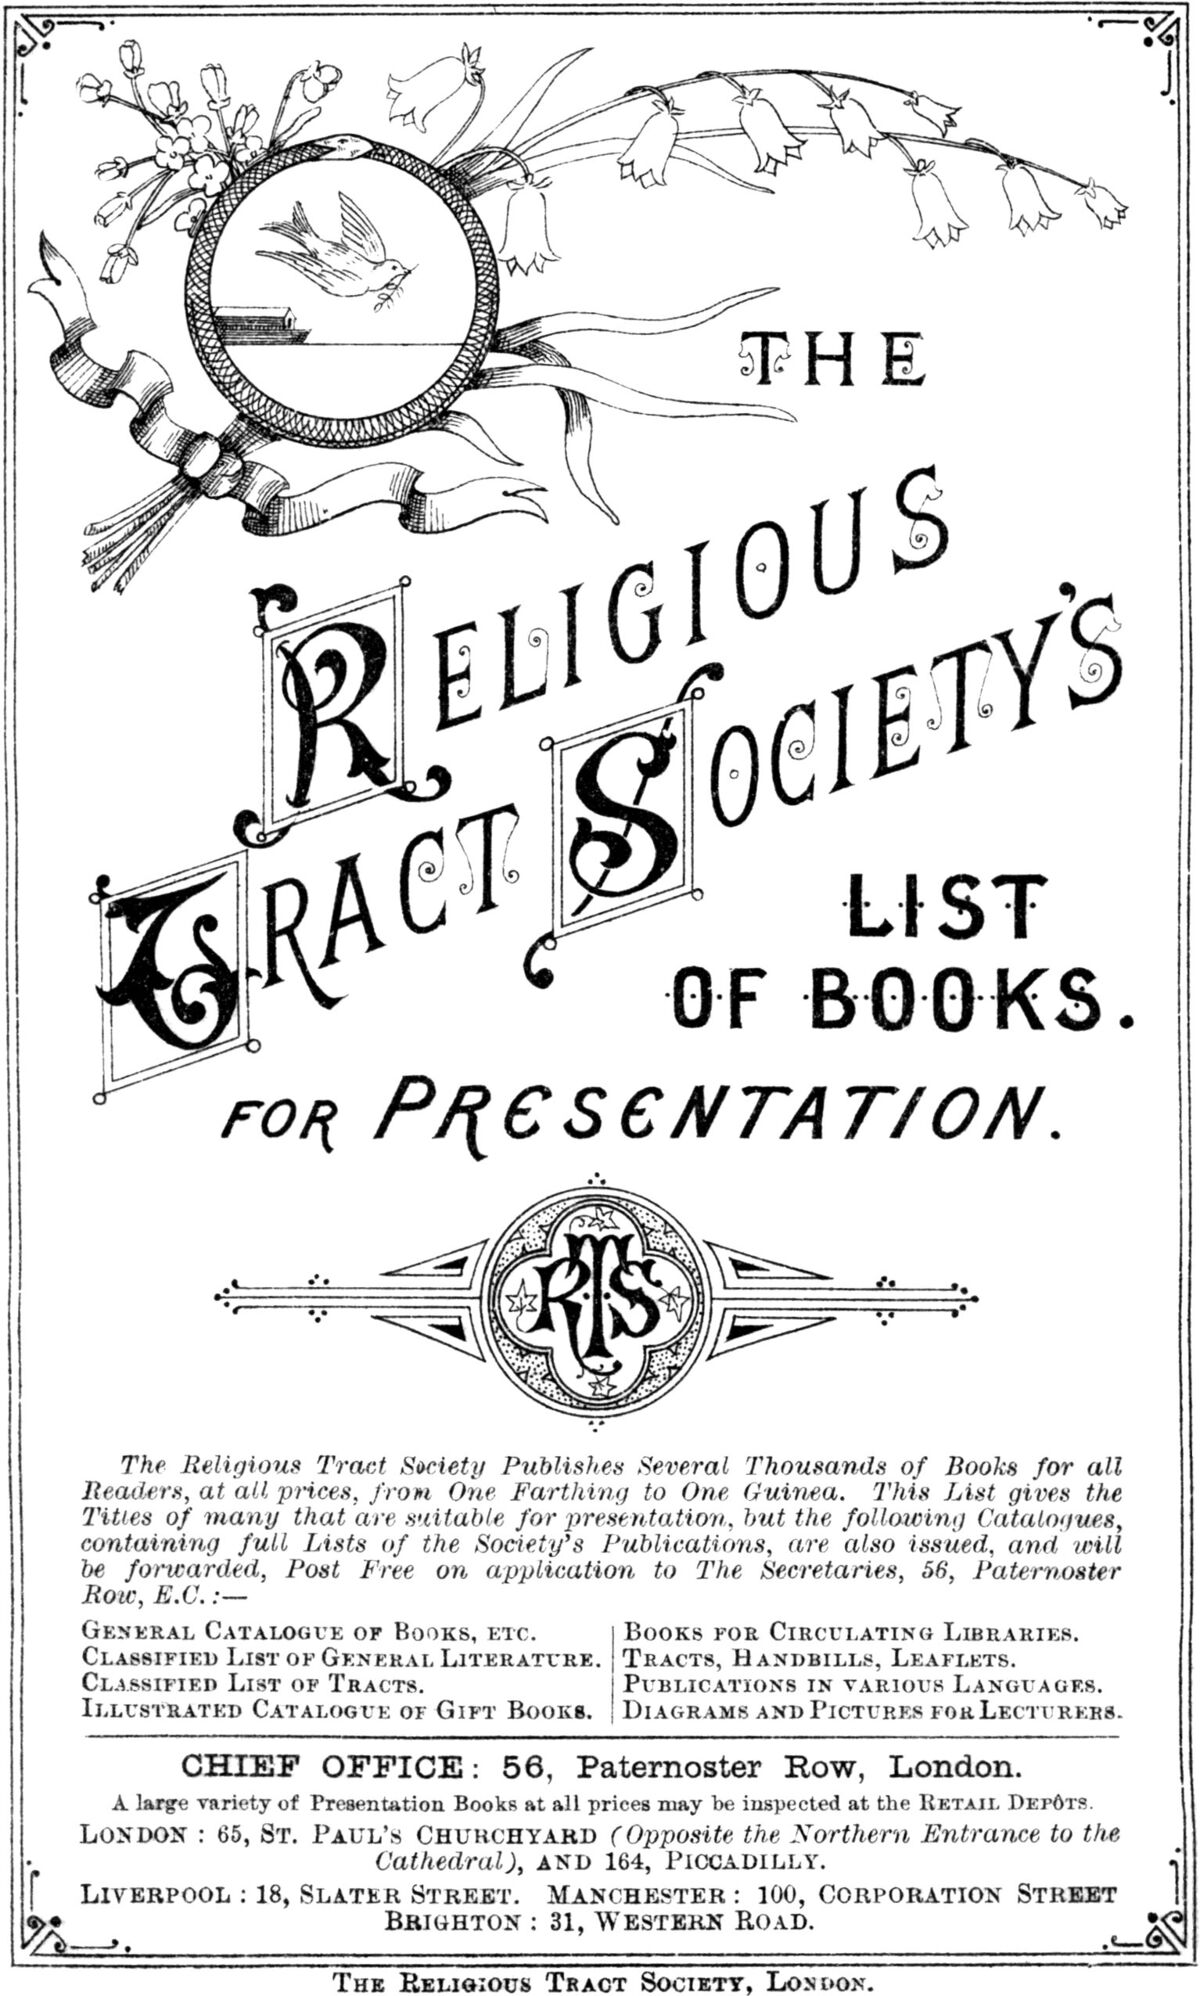 GFD 1/190: Katalog der Religious Tract Society, 1889